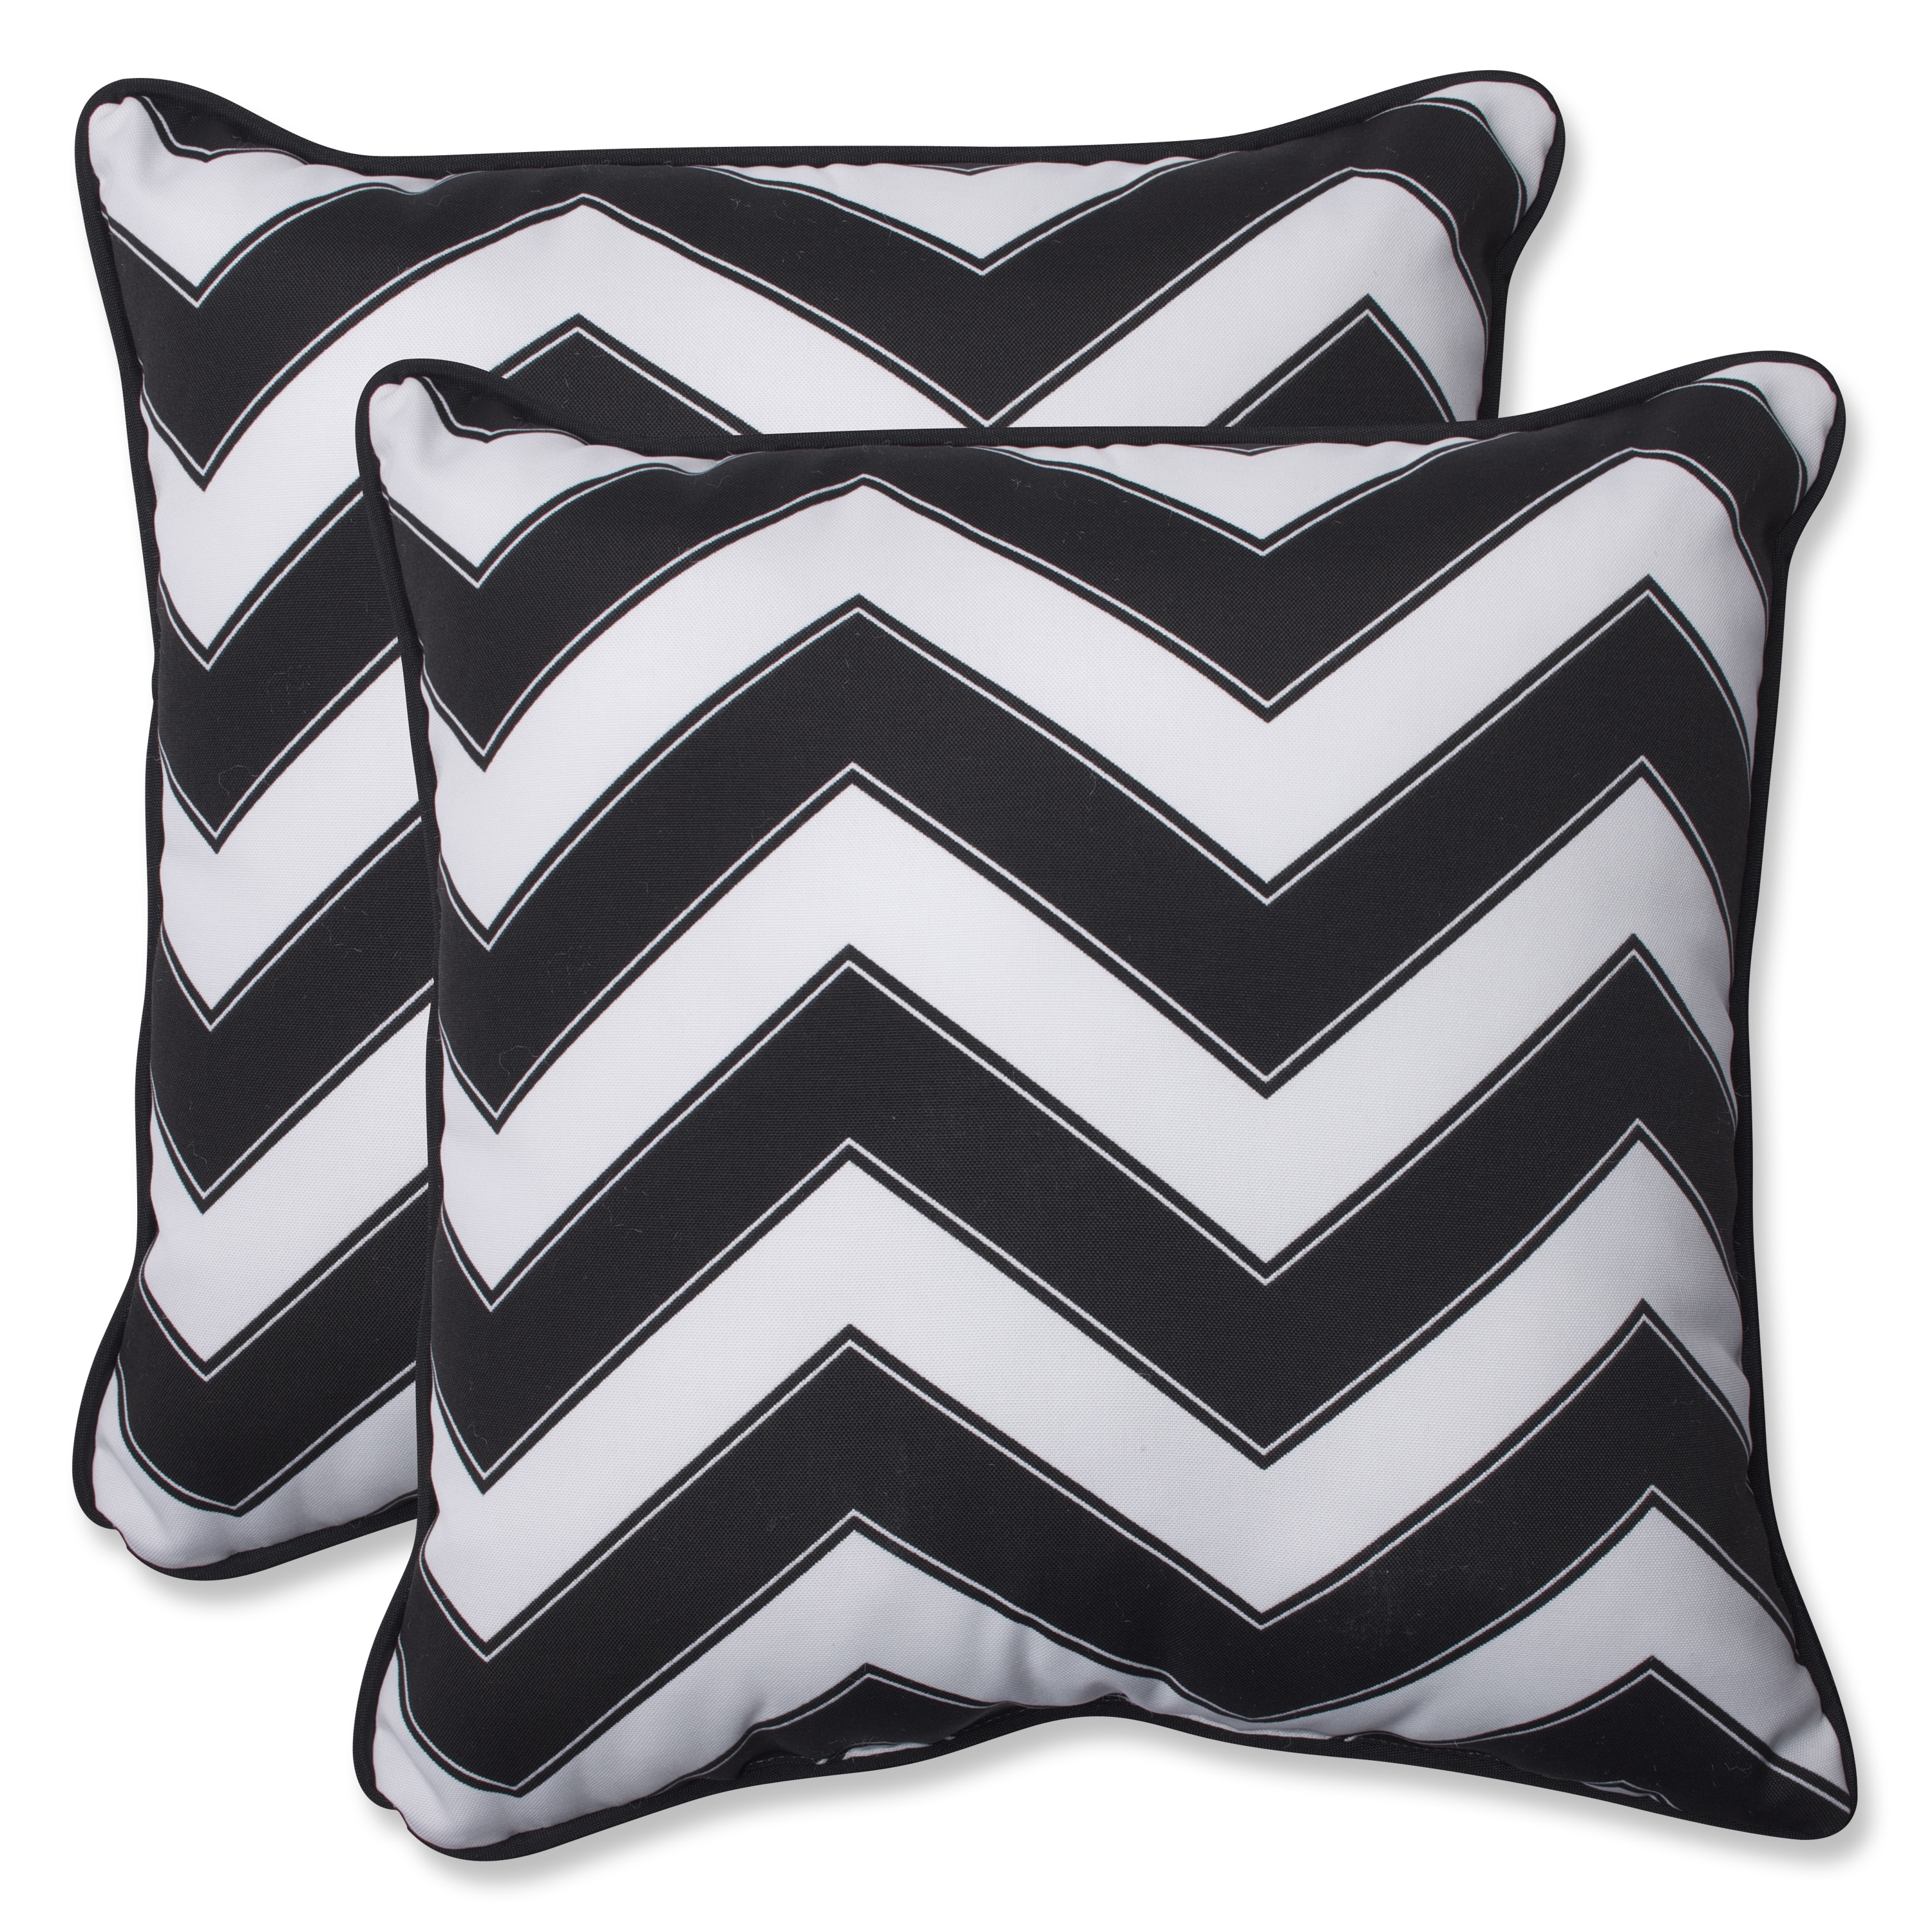 black white outdoor pillow